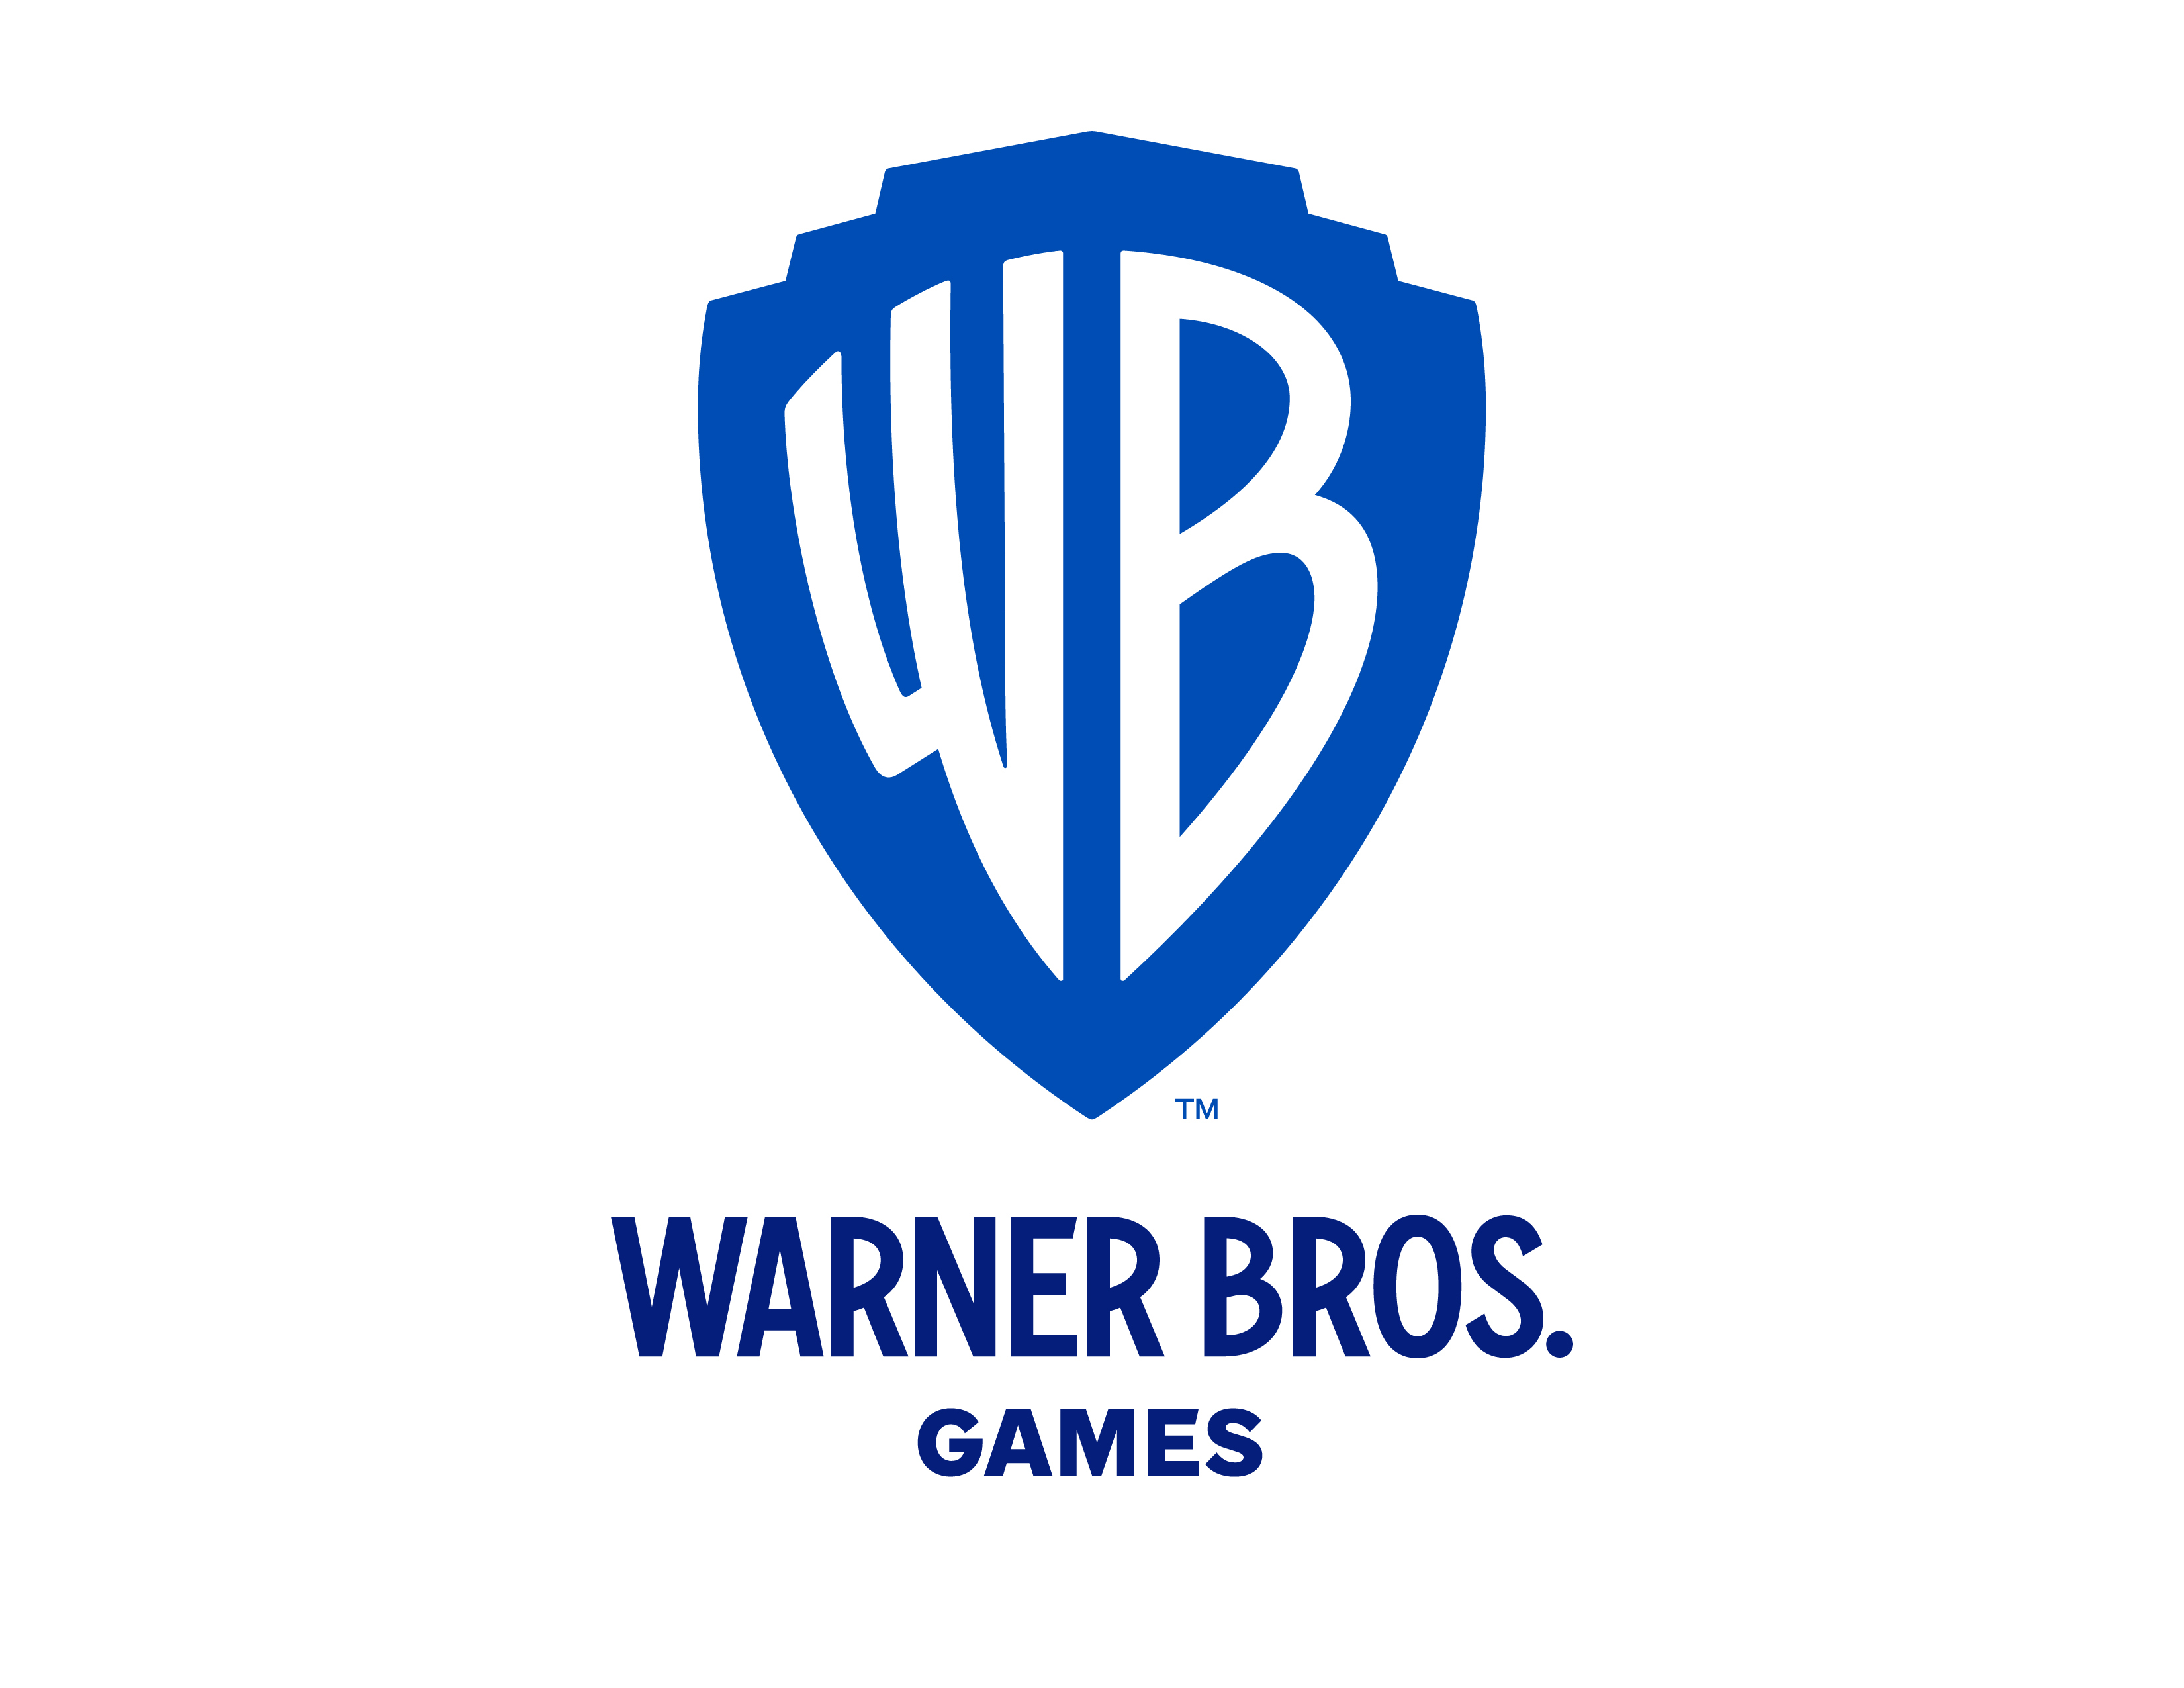 Warner confirma Mortal Kombat: Onslaught, RPG mobile para 2023